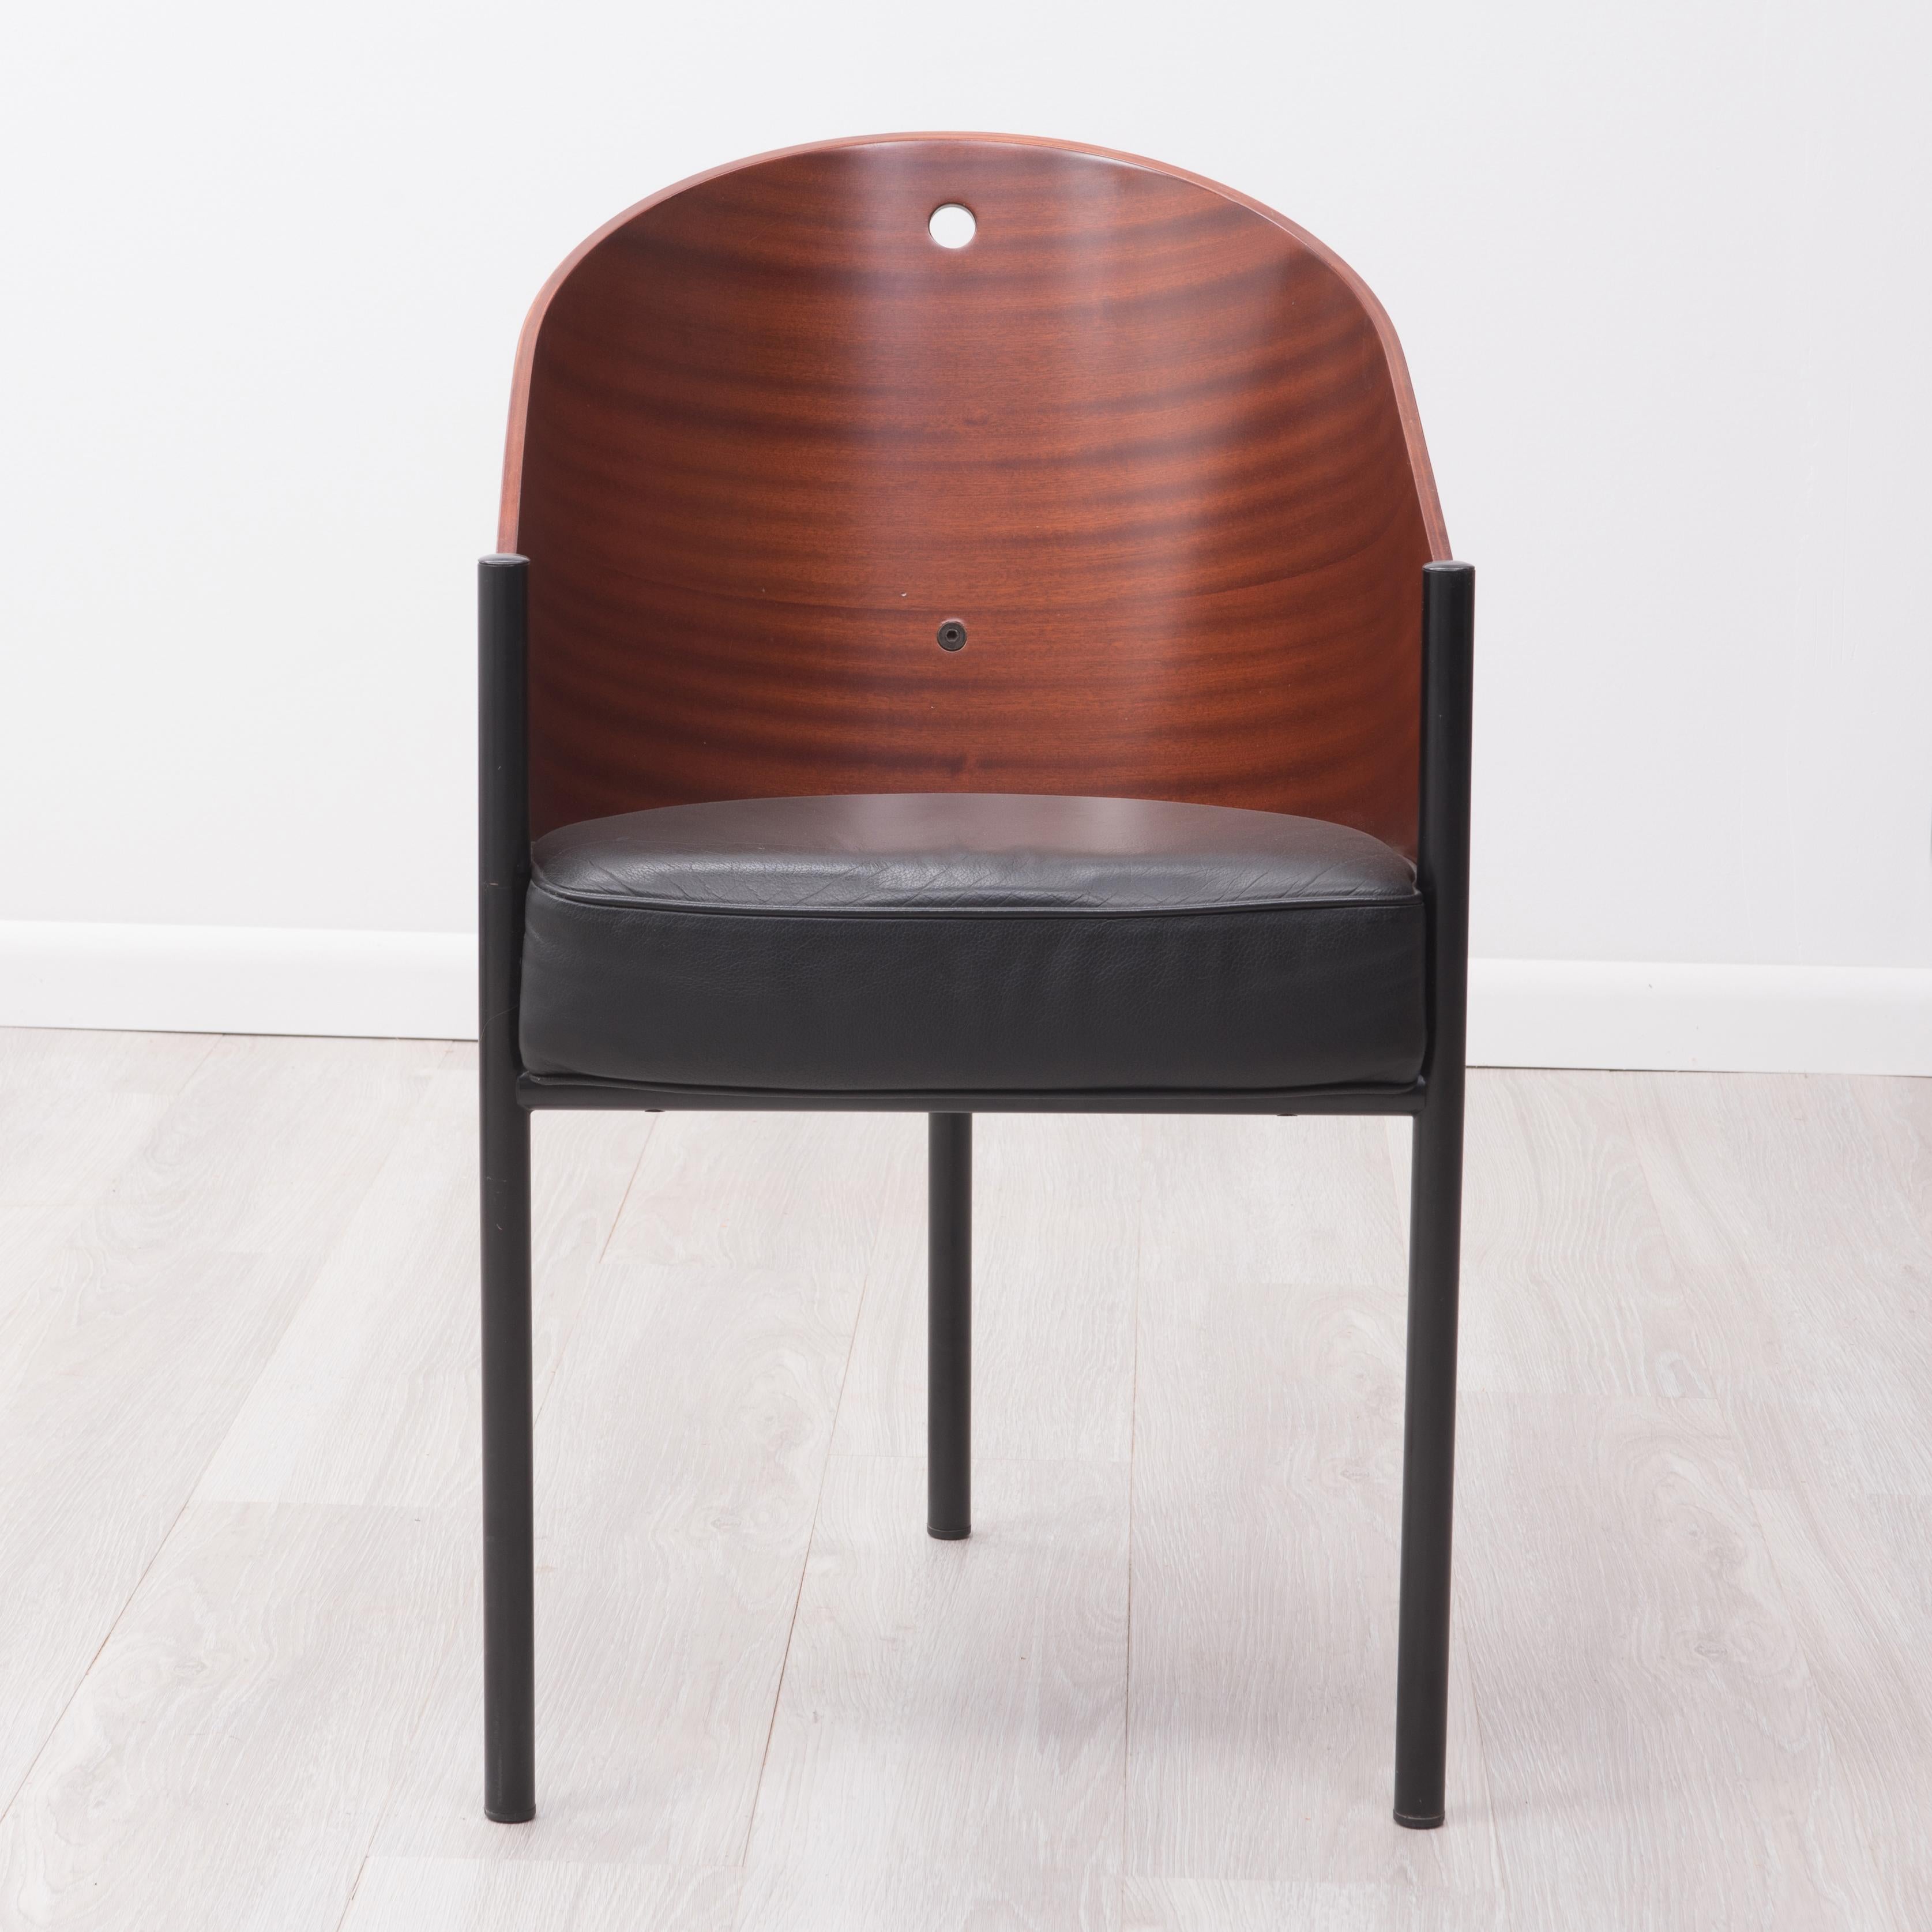 Ein Costes-Sessel, entworfen von Philippe Starck für Driade um 1982 für das Café Costes in Paris. Holzschale mit hervorragender Maserung, drei Beinen und einem Ledersitz.